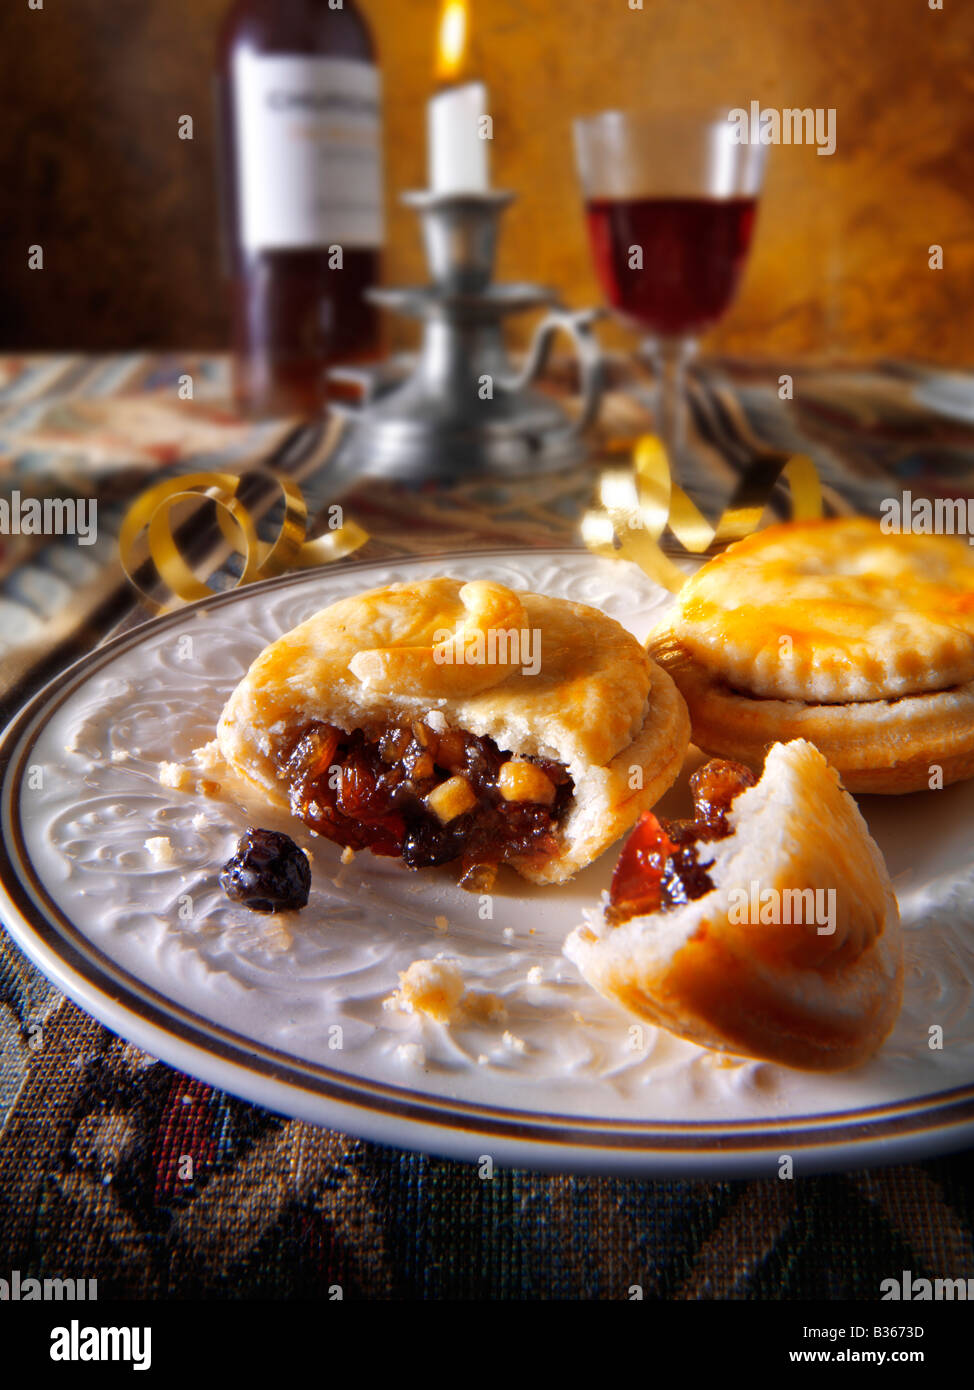 Primo piano di mince pie cucinate fresche in un ambiente festivo Foto Stock